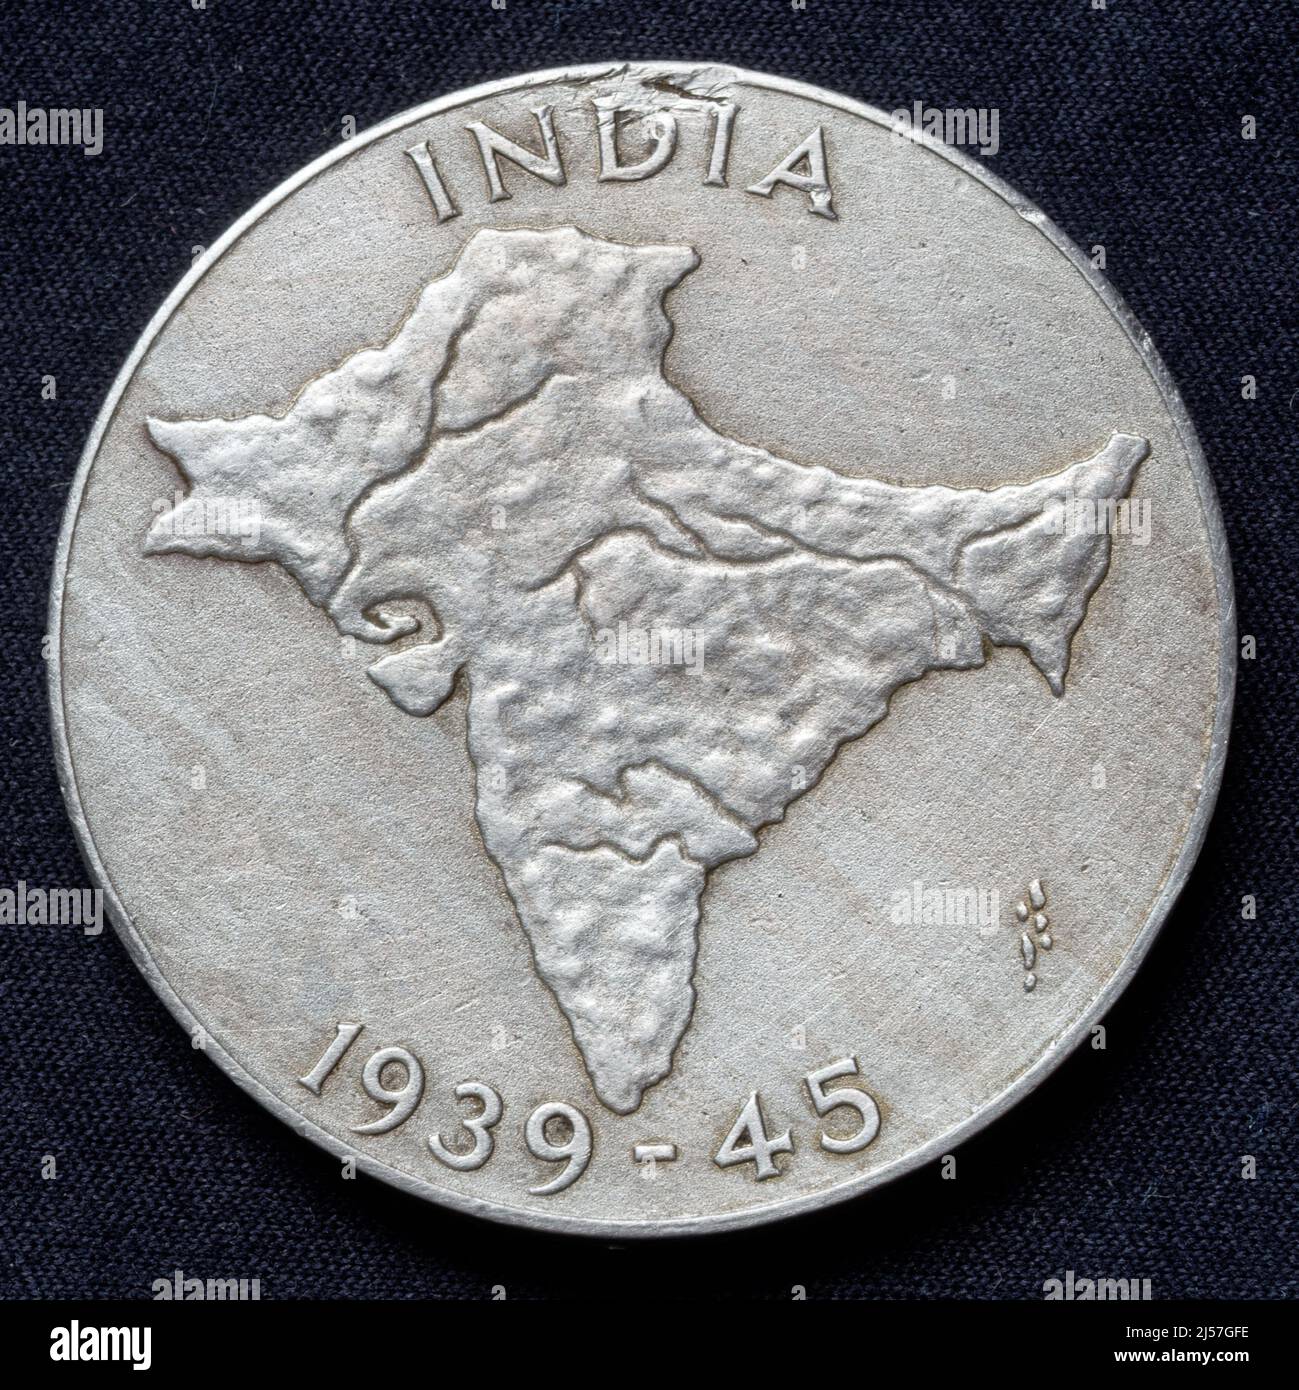 India: Medalla de Servicio de la India 1939 - 1945 (inversa), otorgada a las Fuerzas Indias por al menos 3 años de servicio no operacional en la India entre septiembre de 1938 y septiembre de 1945. Este lado muestra un mapa de alivio de la India. Foto de stock